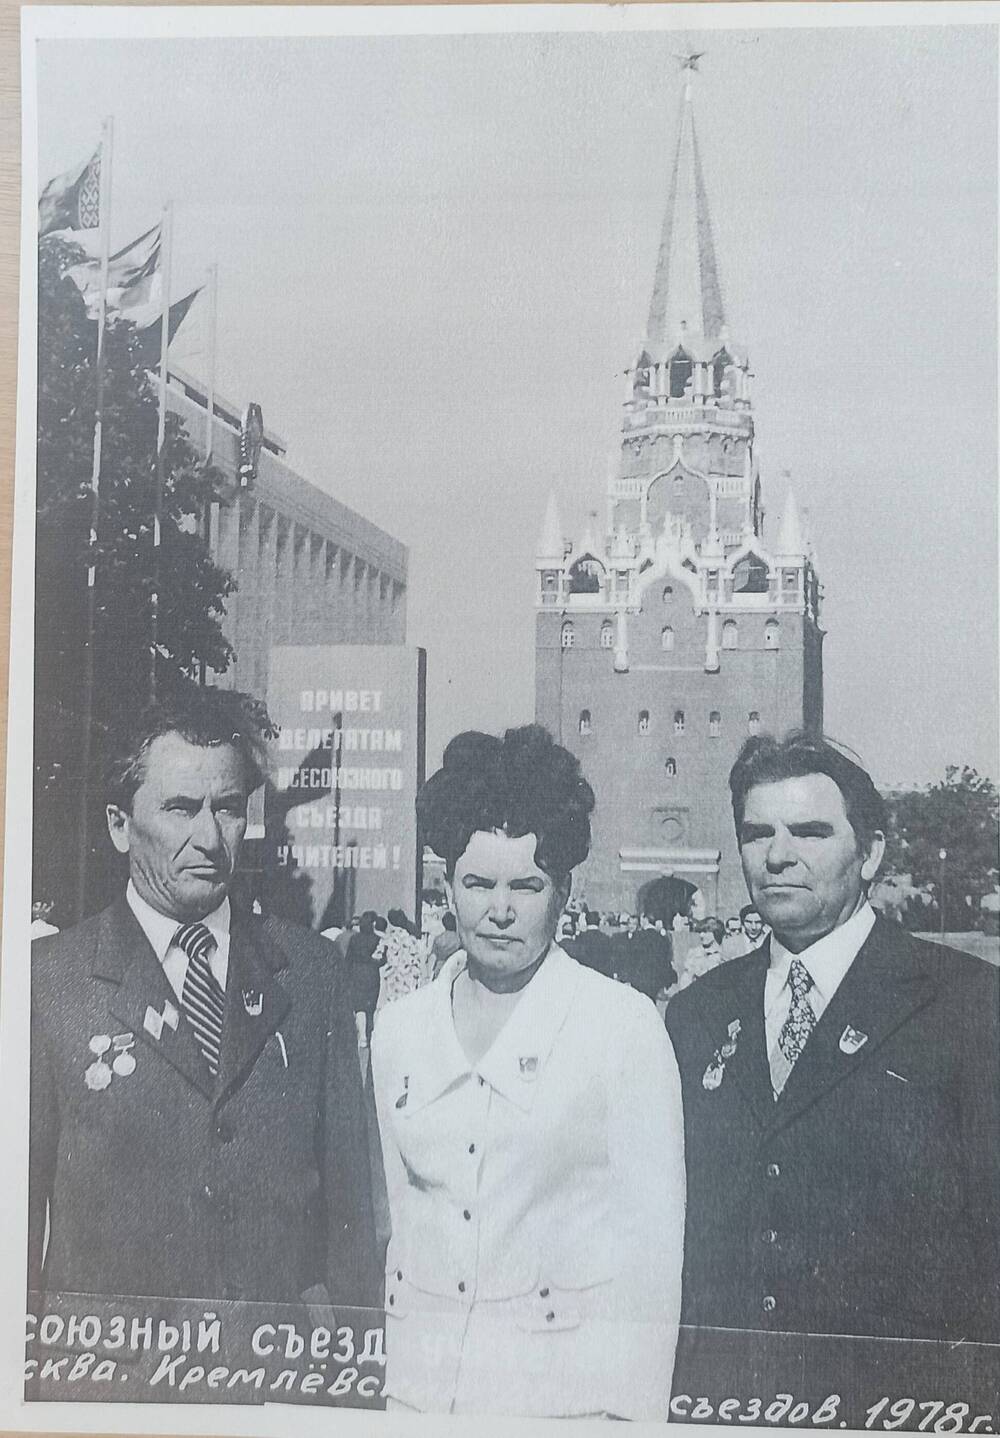 Фото копия Краснова Антонина Ивановна на Всесоюзном съезде учителей. Москва, Кремлевский дворец.